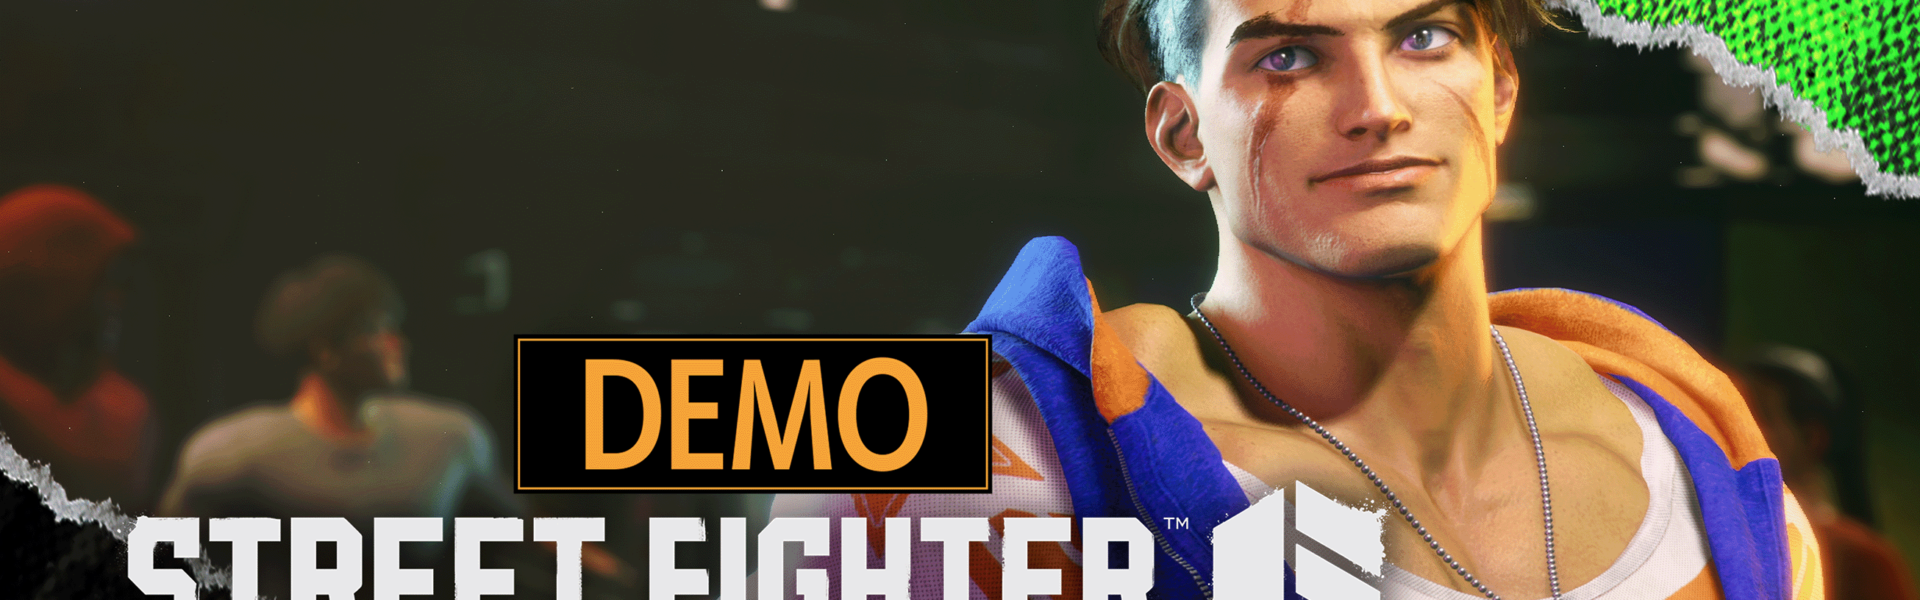 Street Fighter™ 6: Showcase Ankündigungen, Gameplay-Einblicke und Demo!